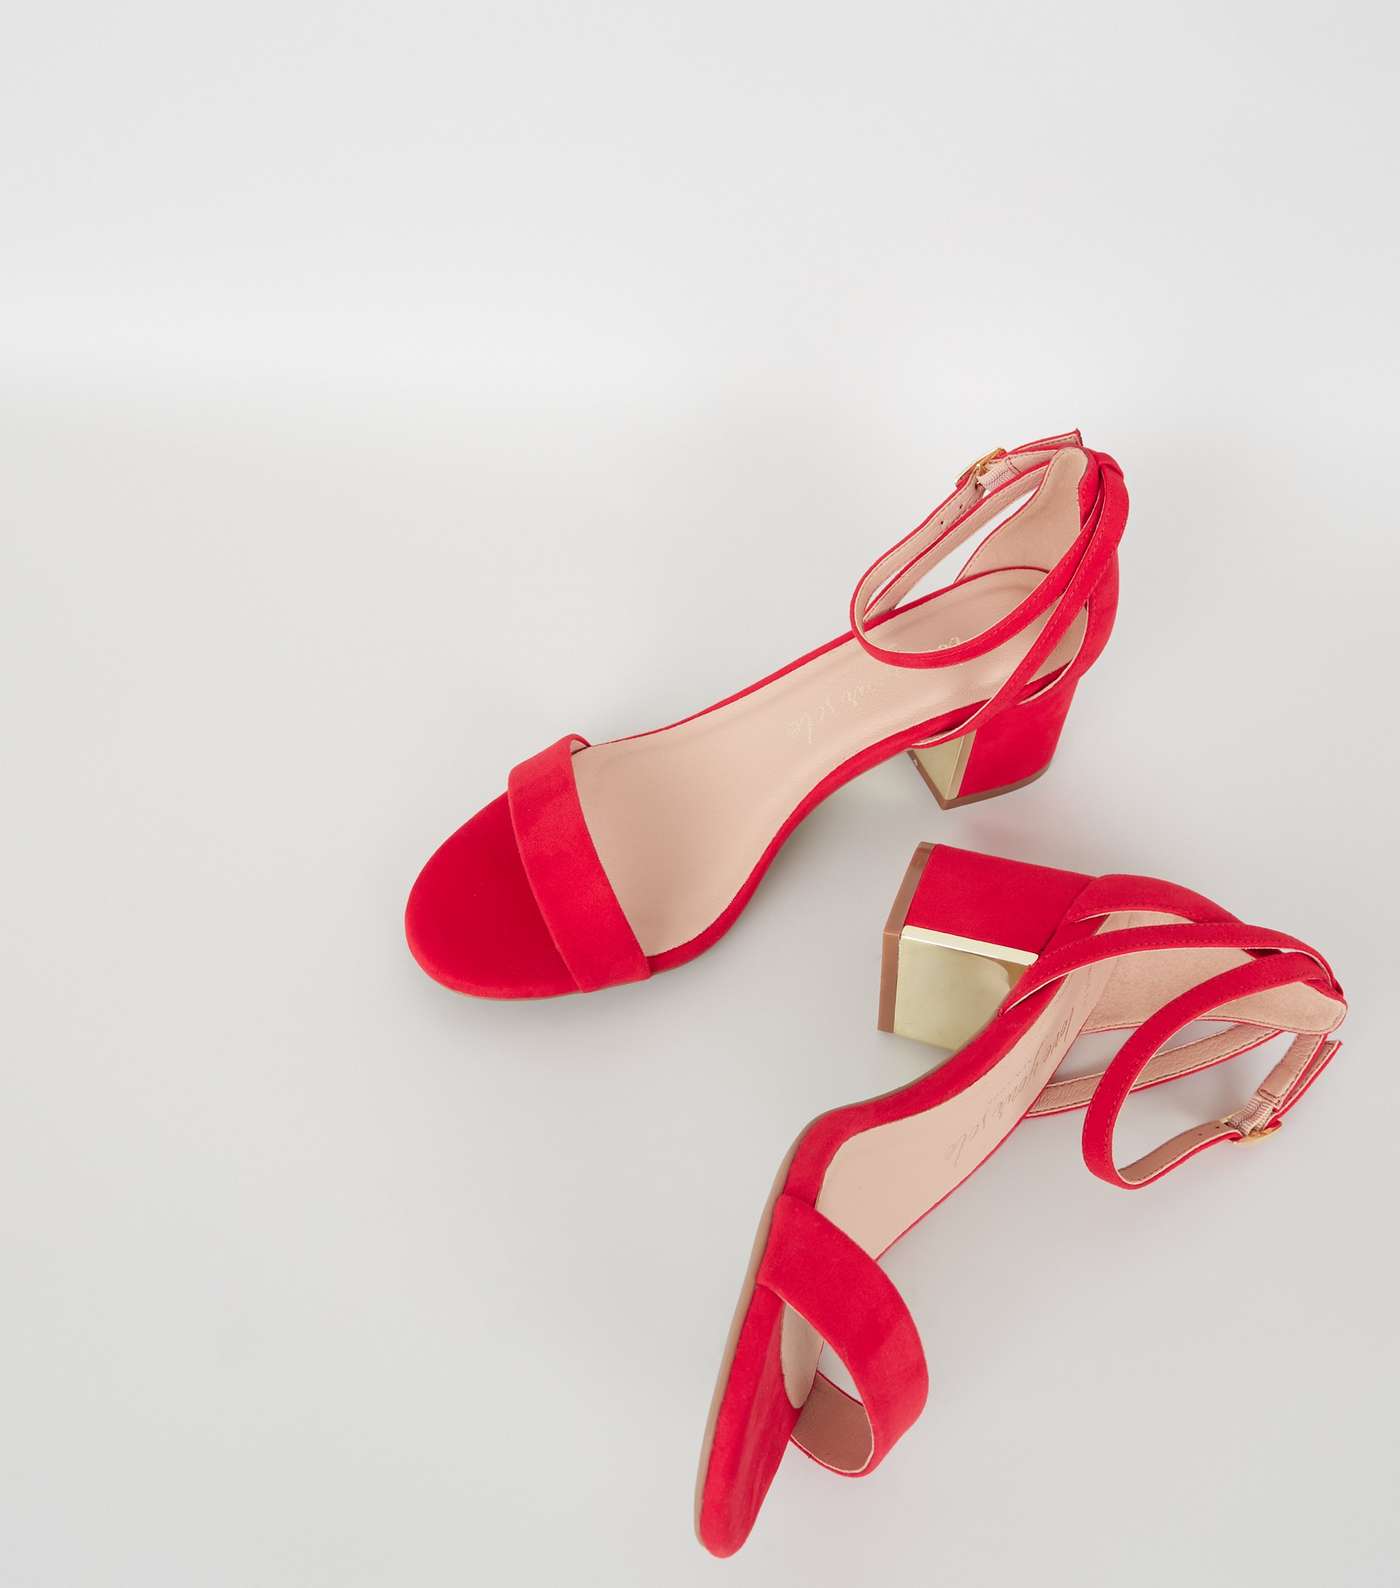 Wide Fit Red Metal Low Block Heels Image 3